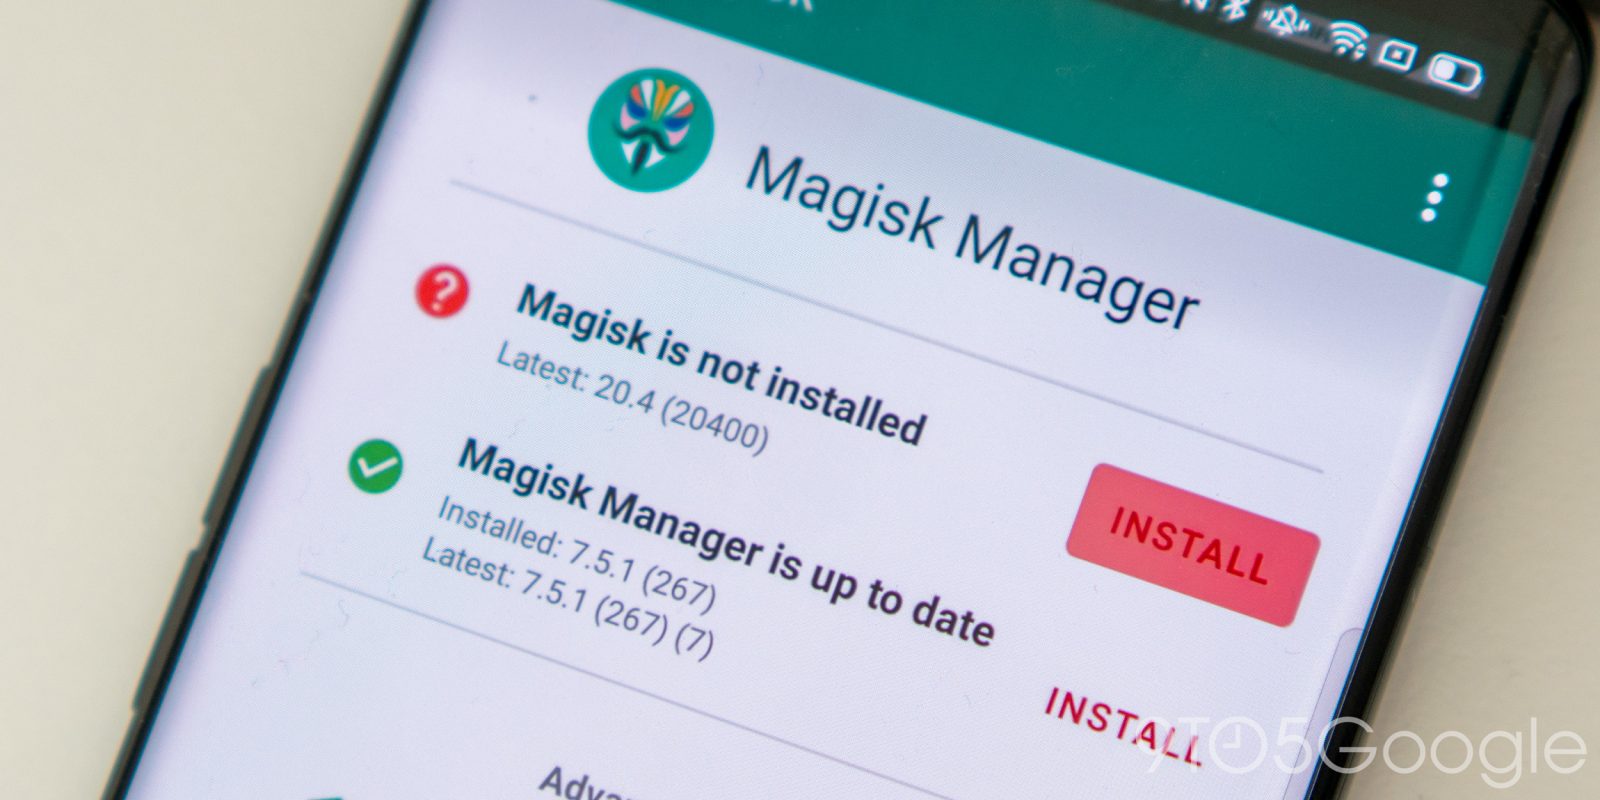 magisk v21 and magisk Manager 8.0